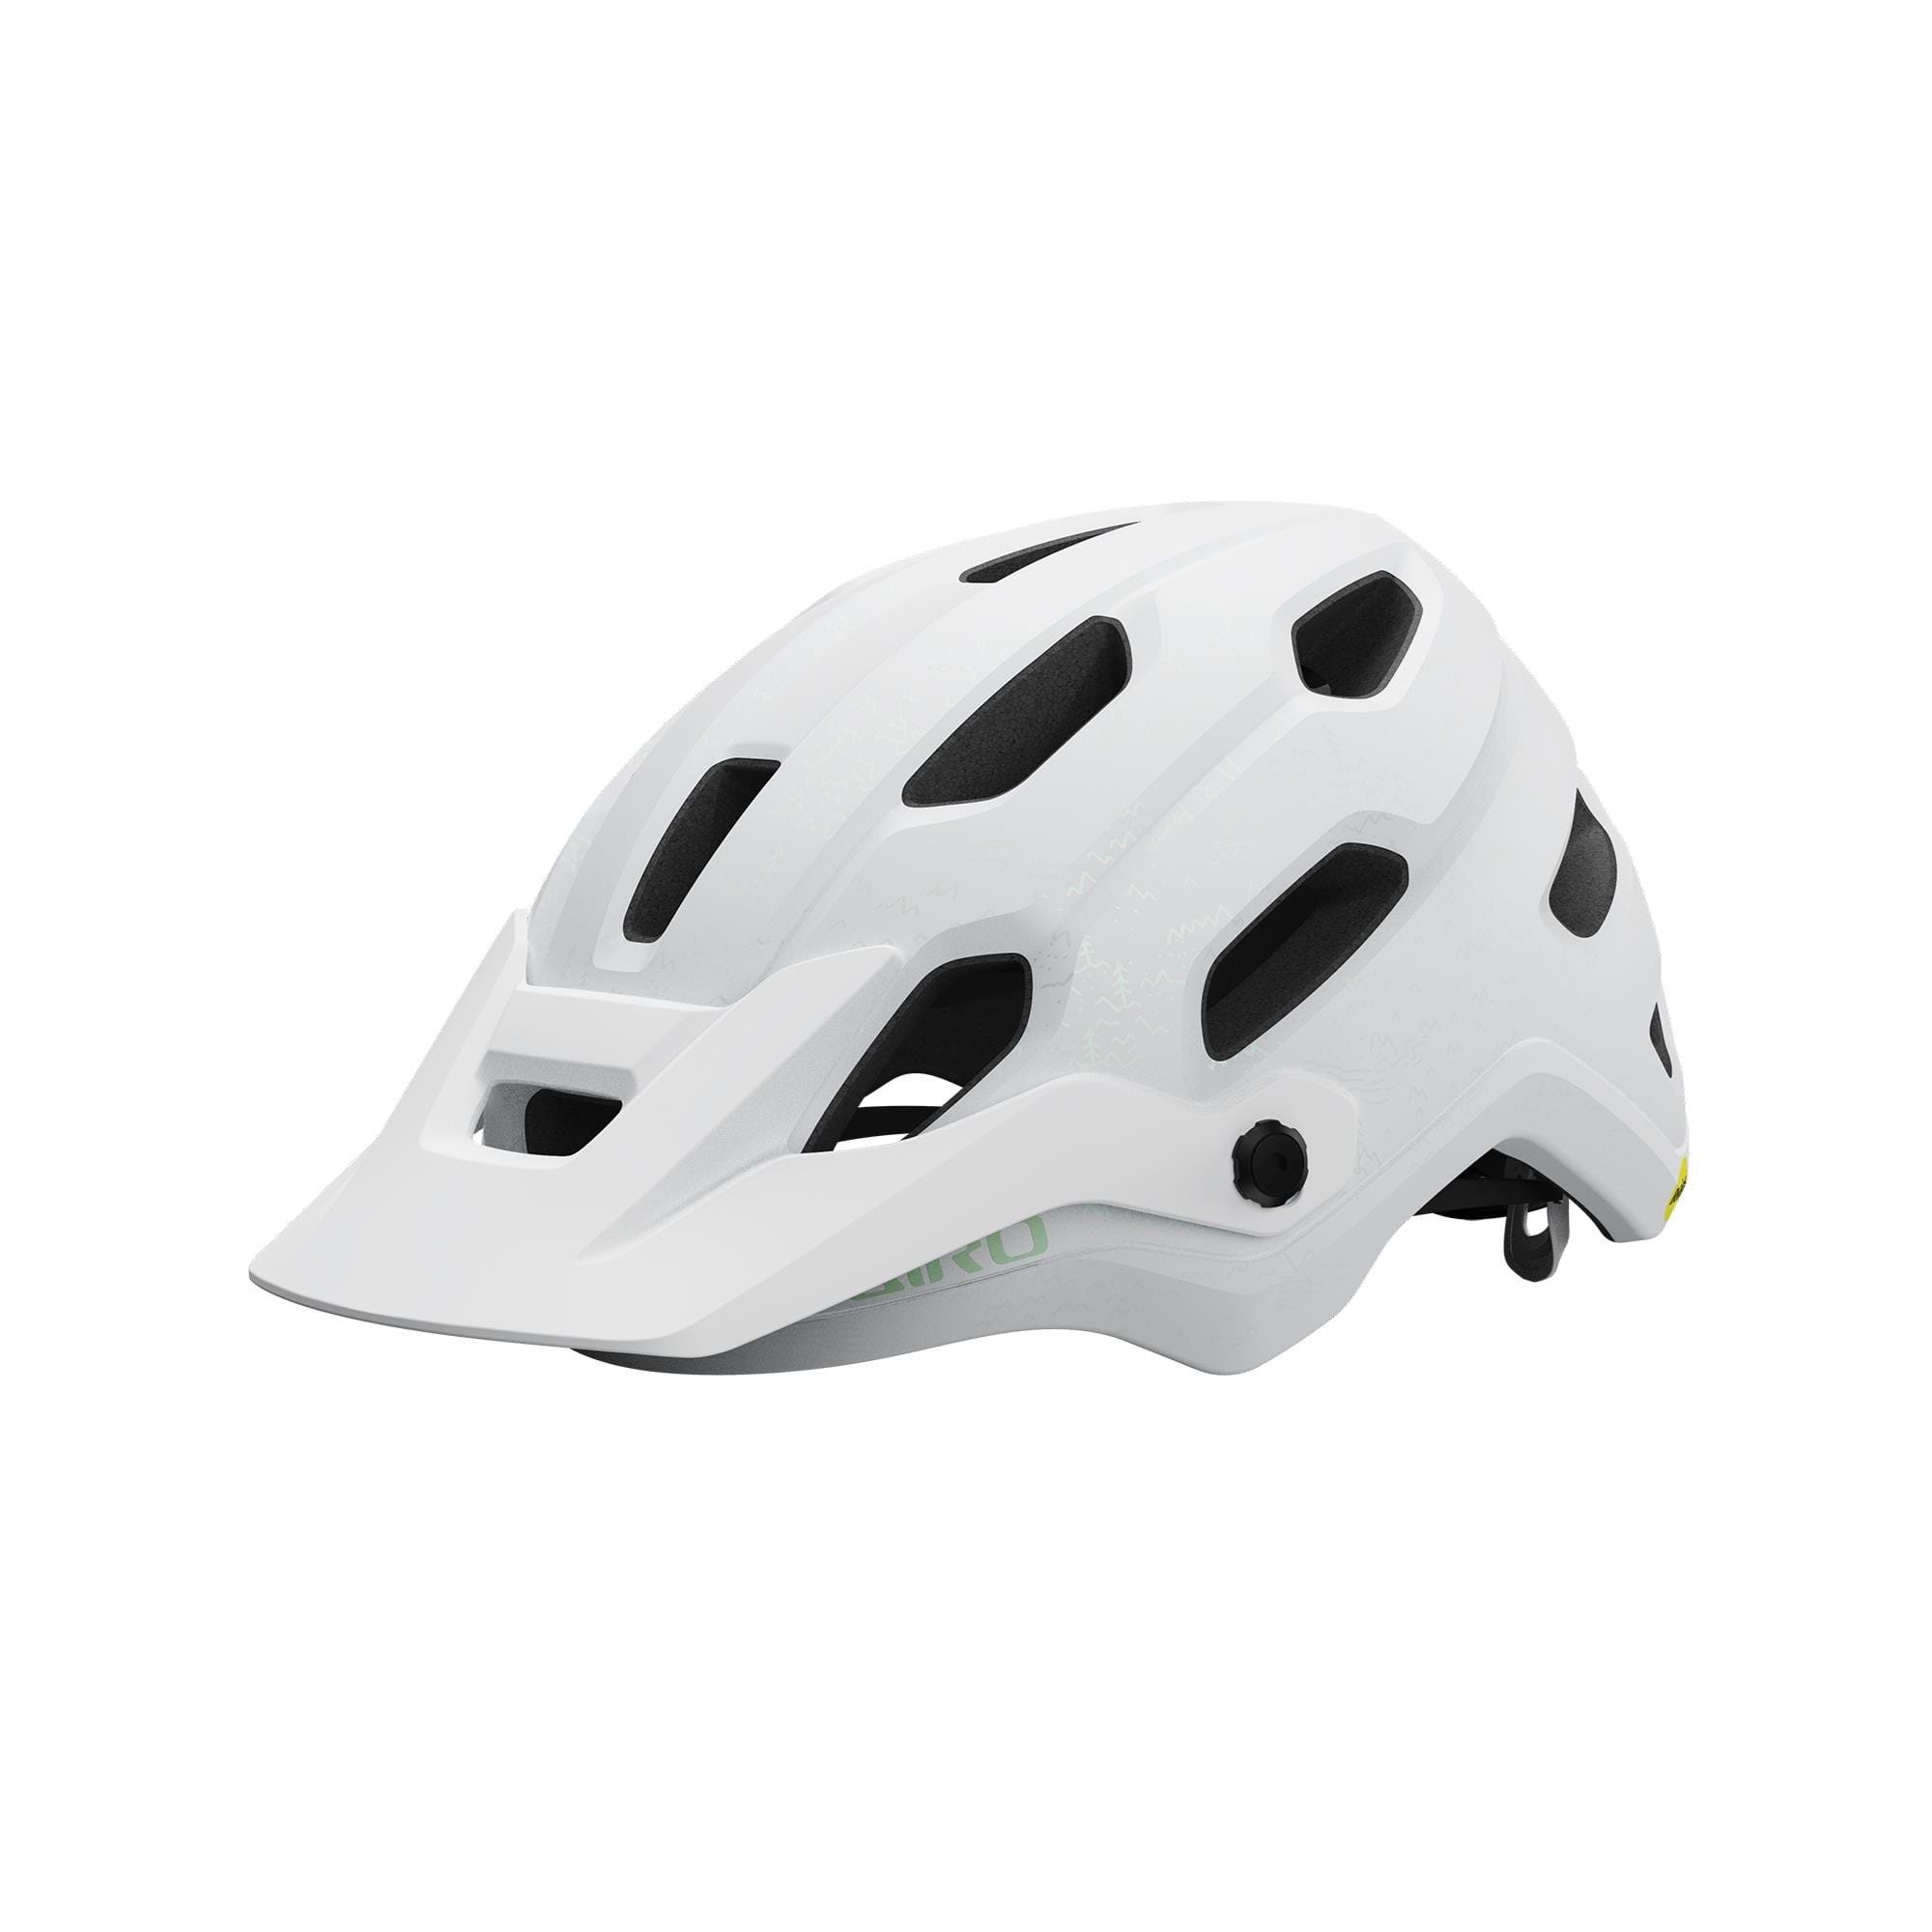 Giro Source MIPS Women's Helmet